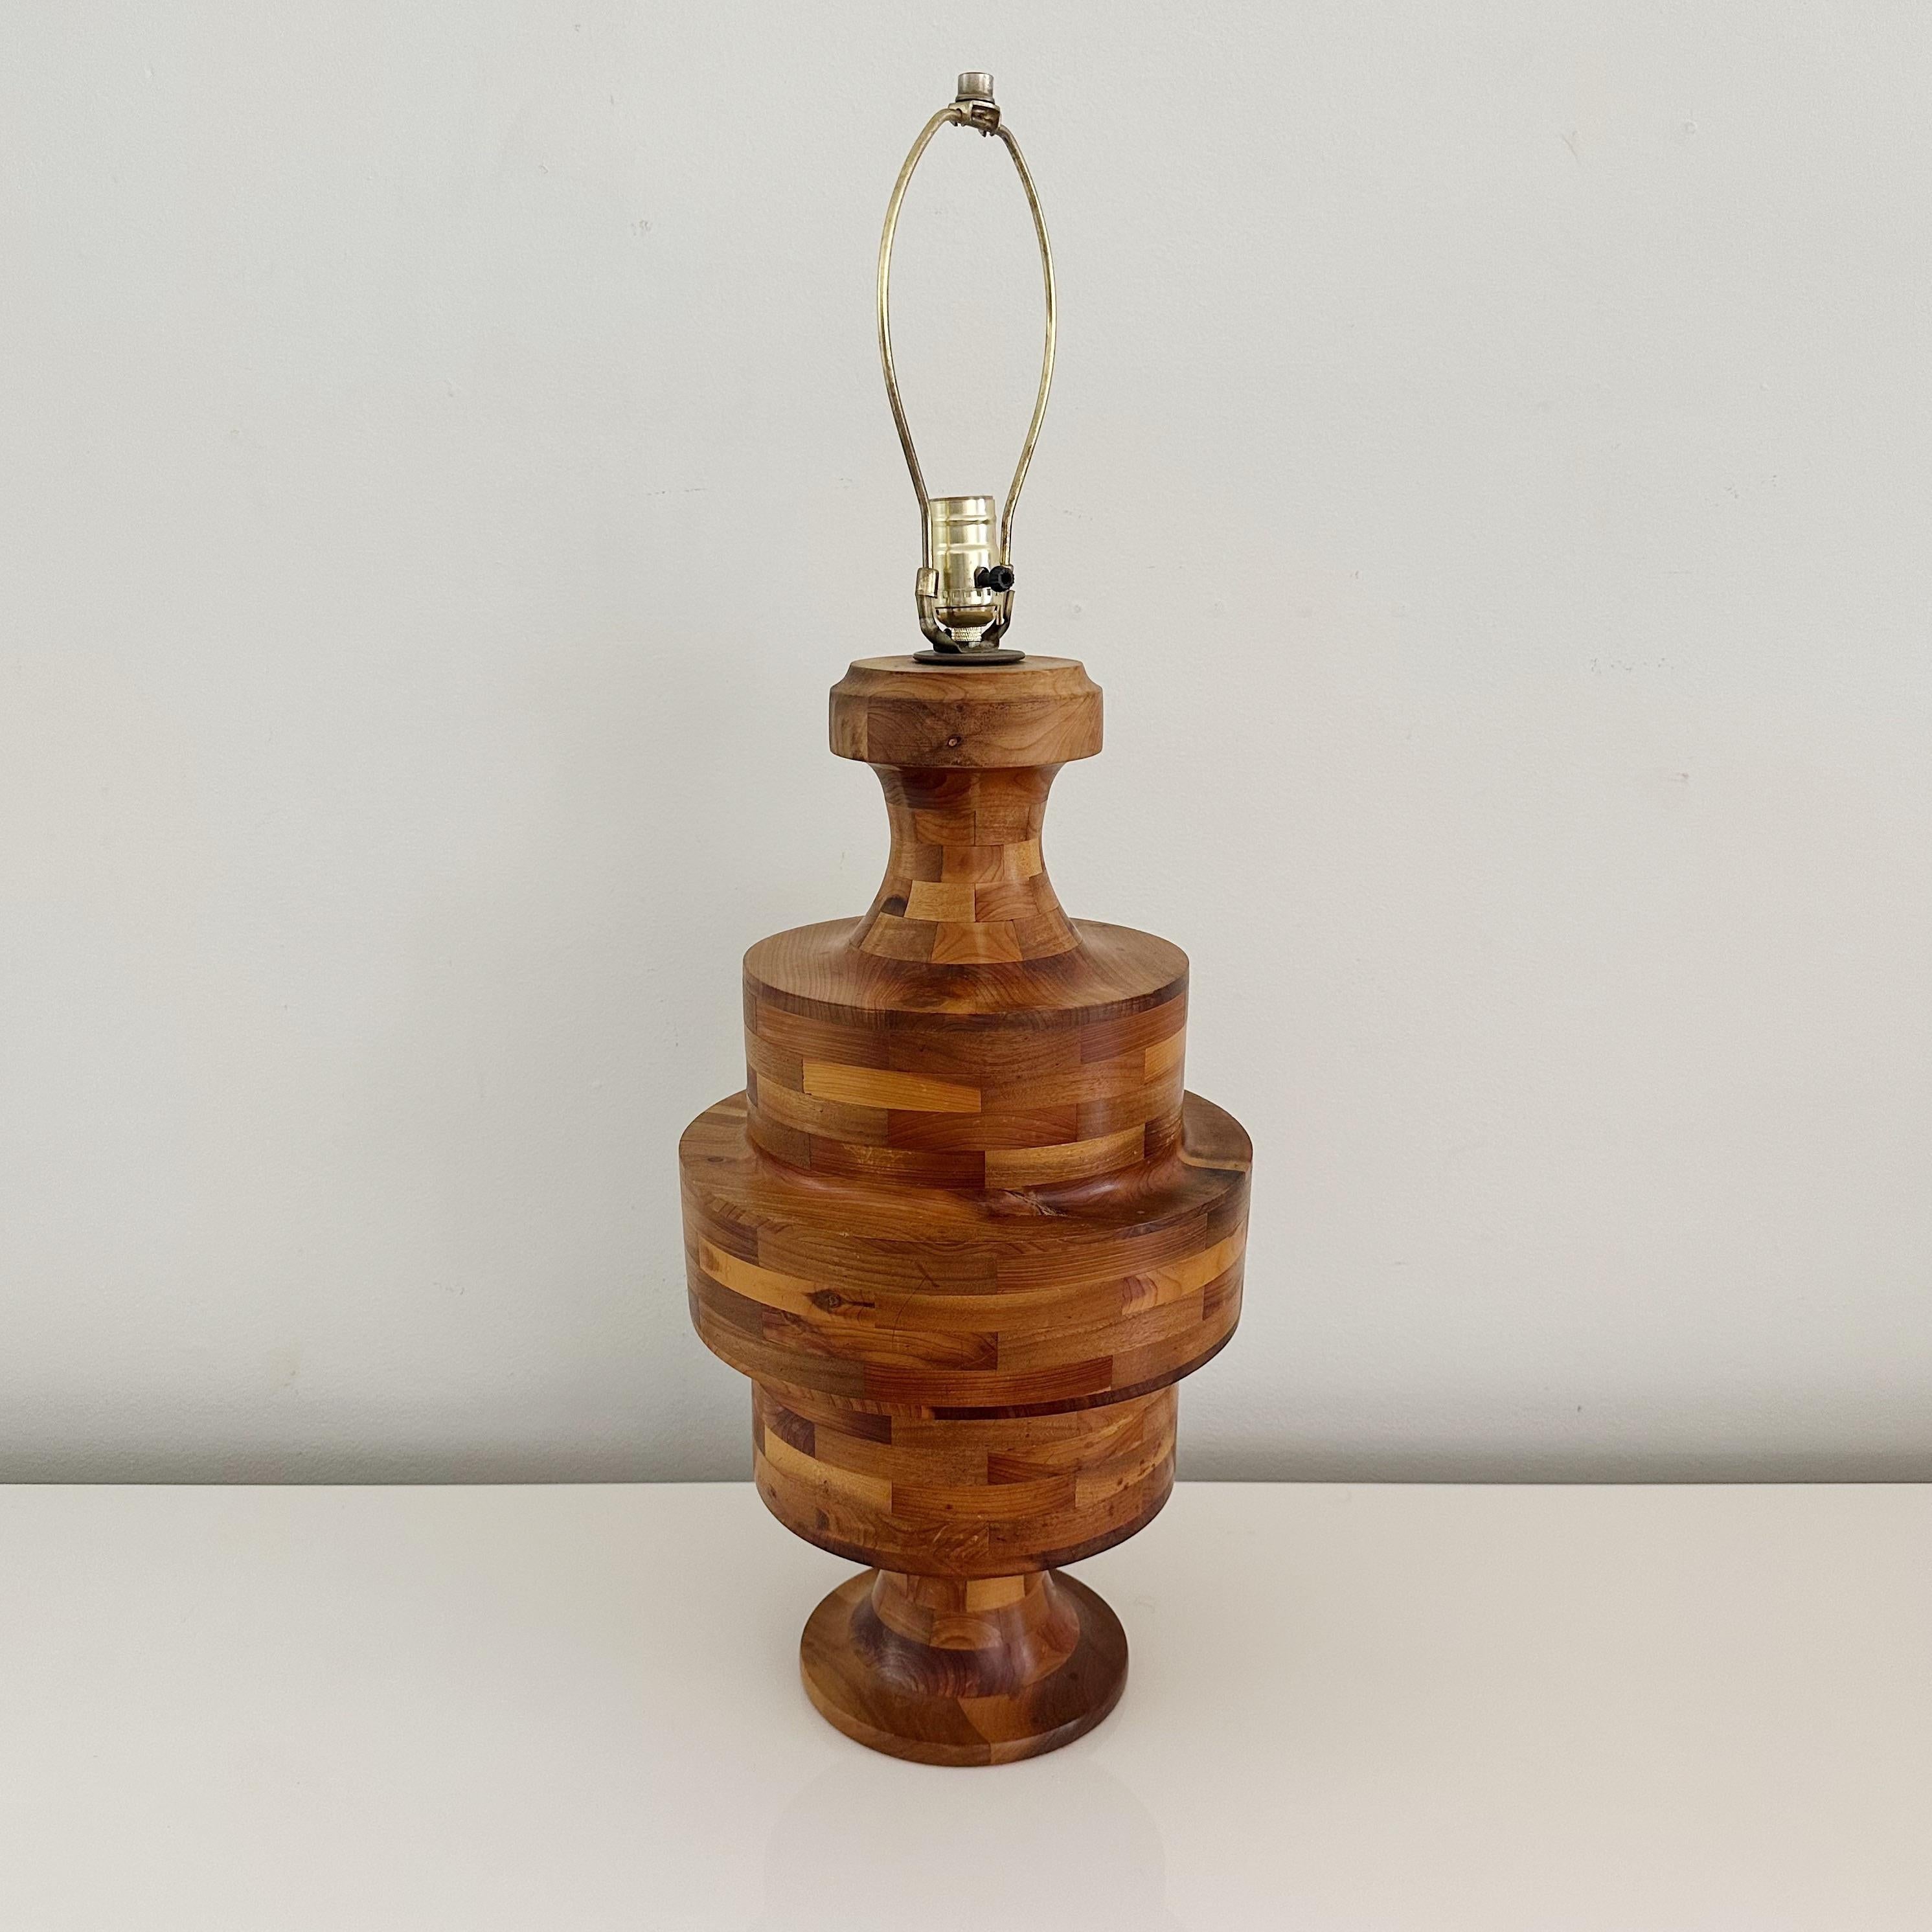 Vintage Marquetry Hand gedreht Lathe Block Lampe, aus verschiedenen Hölzern aus den 1970er Jahren mit einem auffälligen Stacked Wood Farbmuster gefertigt

Handgefertigte Intarsienlampe, die fachmännisch aus einer atemberaubenden Auswahl